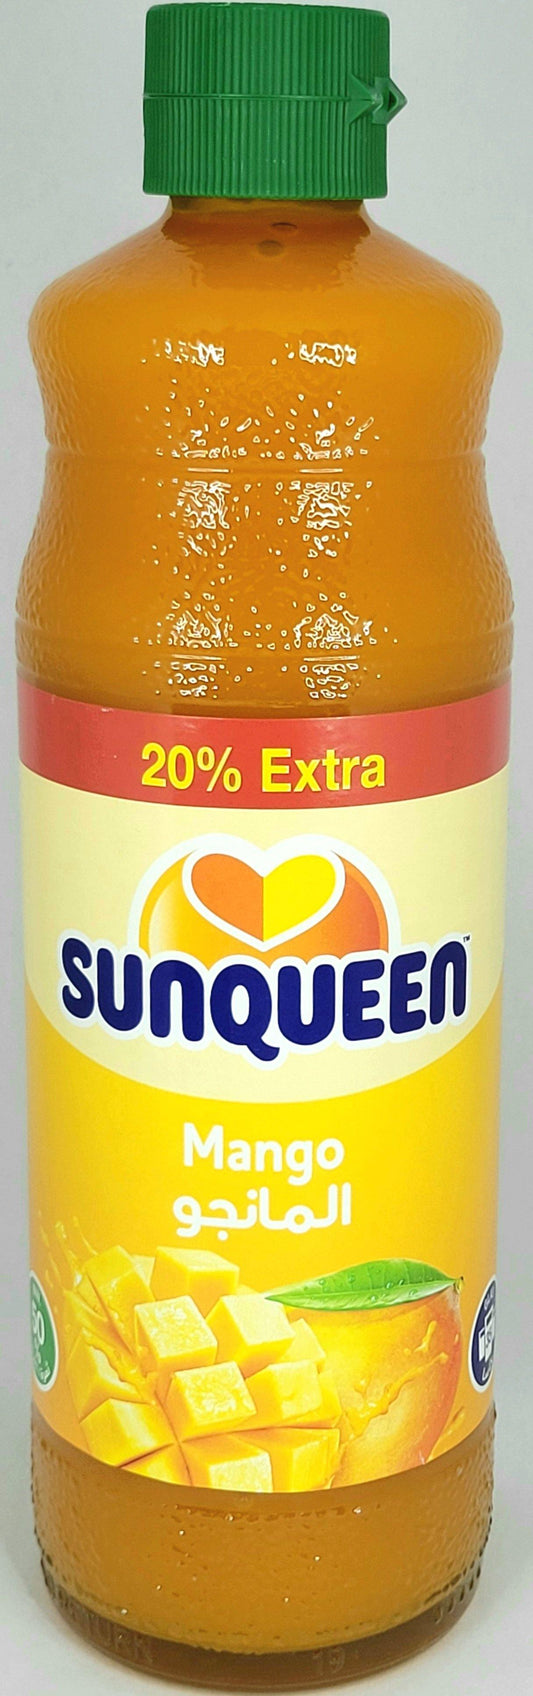 SunQueen Mango - Arabian Shopping Zone